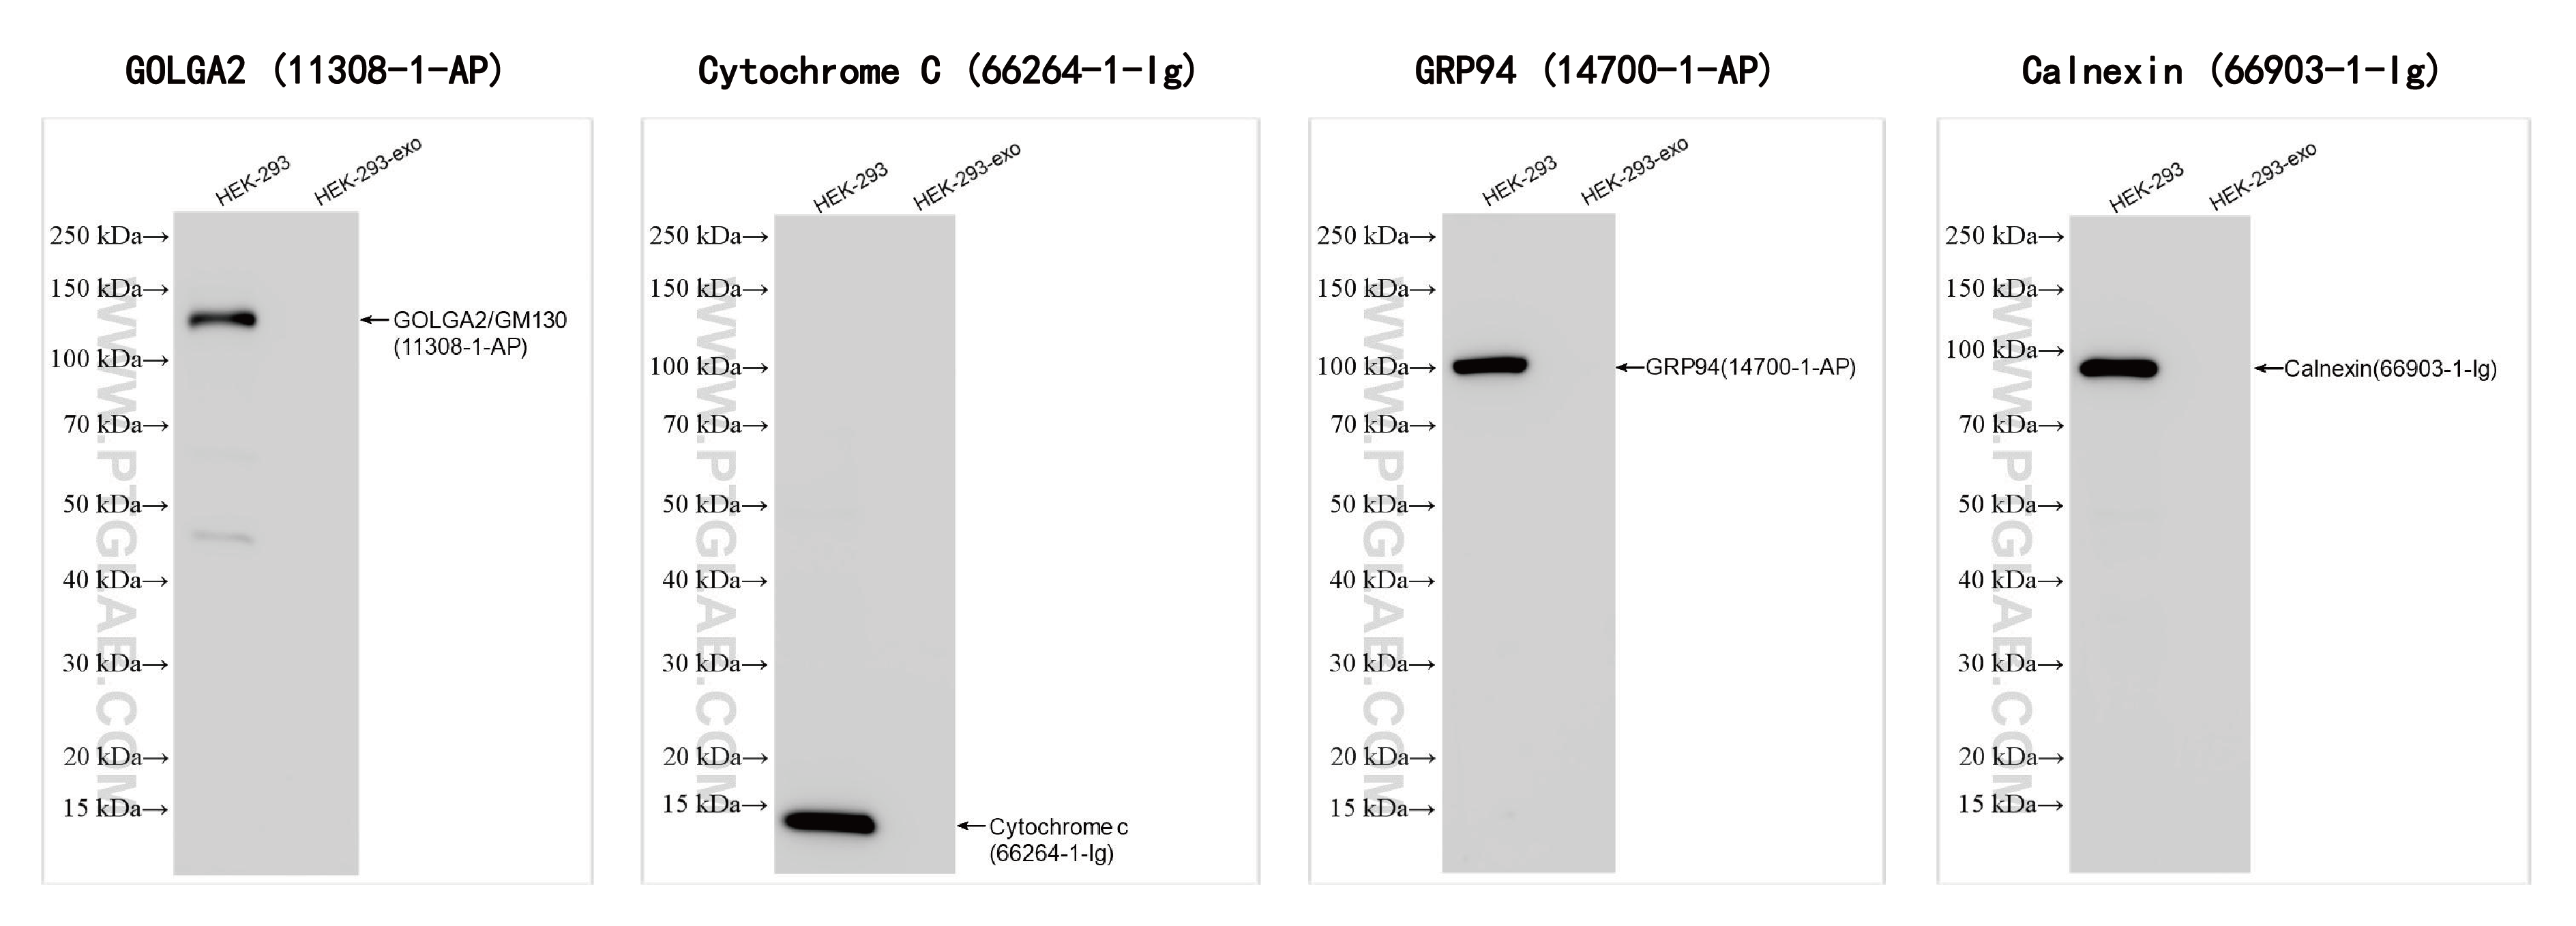 使用外泌体分离及蛋白提取试剂盒（细胞培养上清/尿液）（货号：PK10028）提取的HEK-293-derived exosomes (HEK-293-exo)外泌体阴性对照检测。
<br>抗体：
<br>GOLGA2/GM130 11308-1-AP  稀释度：1:10000;
<br>Cytochrome c  66264-1-Ig  稀释度：1: 5000;
<br>GRP94  114700-1-AP  稀释度：1: 10000;
<br>Calnexin  66903-1-Ig 稀释度：1:10000。